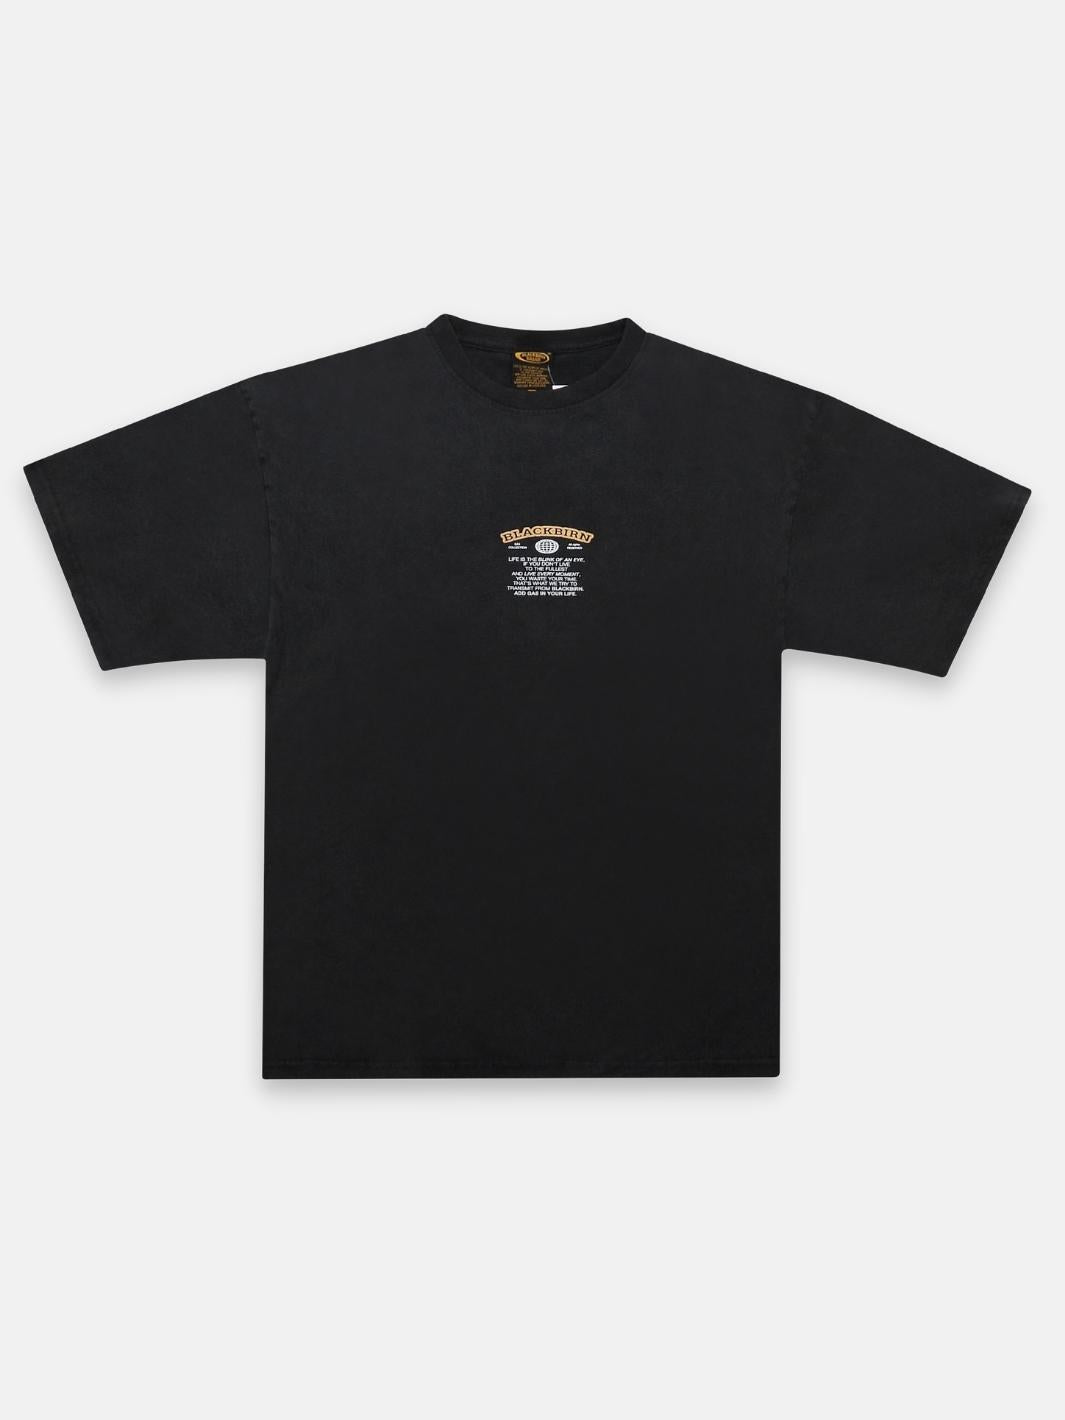 Hose T-shirt - Blackbirn